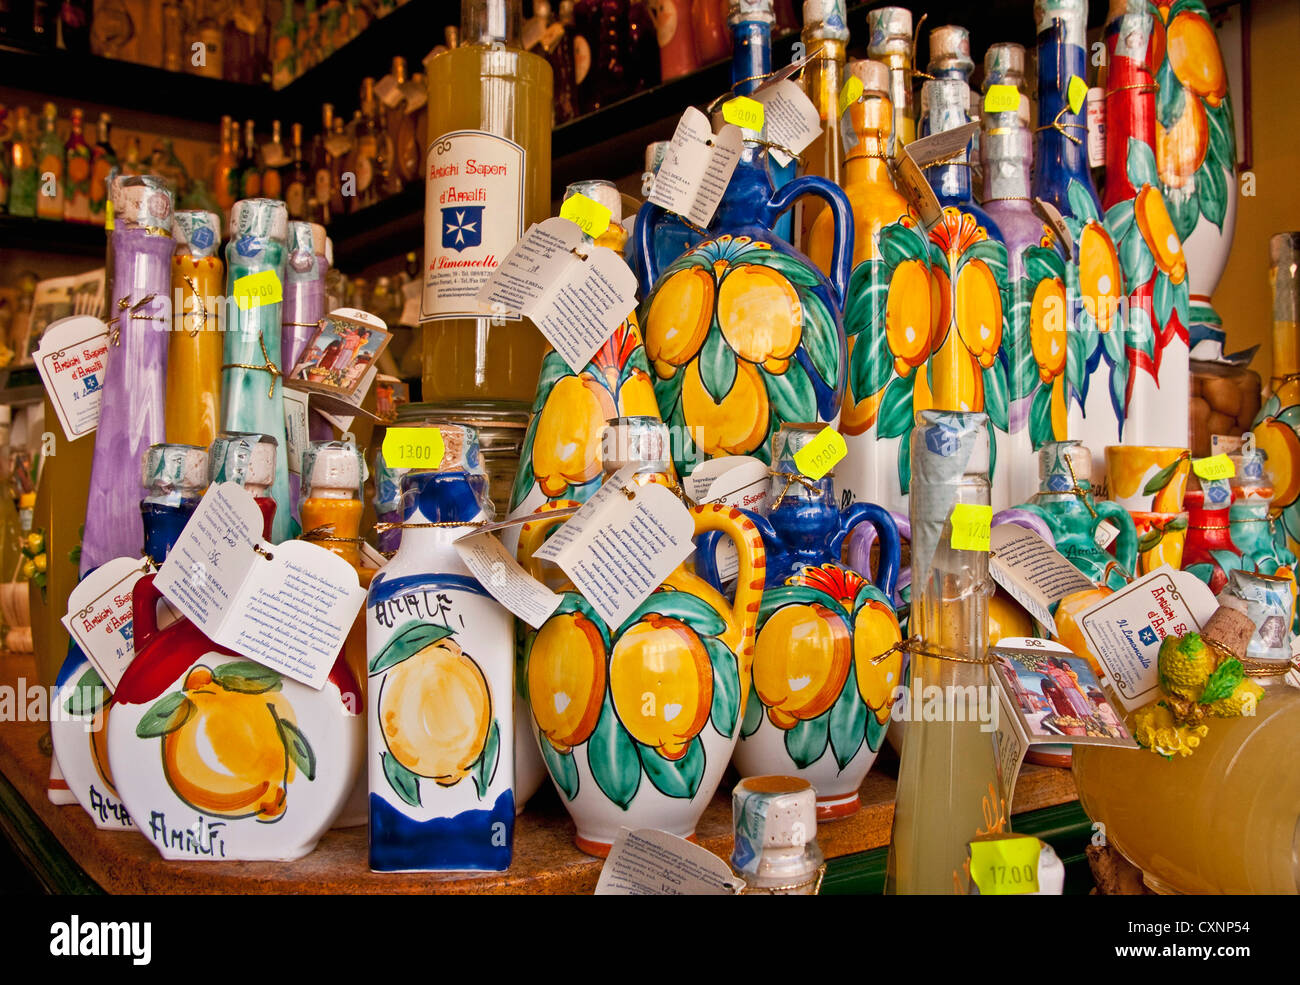 https://c8.alamy.com/comp/CXNP54/amalfi-shop-specializing-in-limoncello-locally-made-lemon-liqueur-CXNP54.jpg